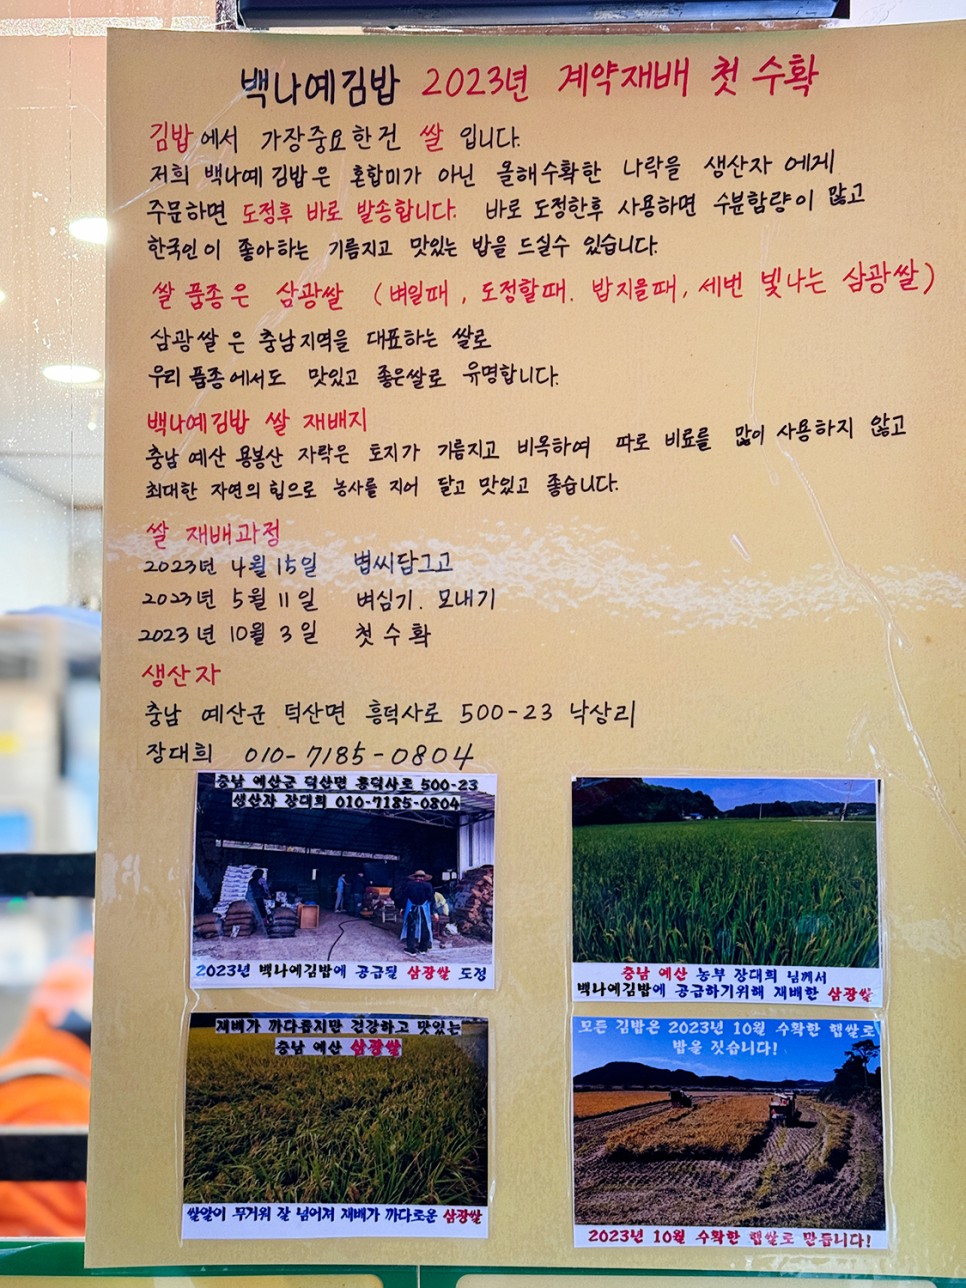 성남 분당 김밥 맛집 <백나예김밥>, 전국김밥일주에 소개된 집